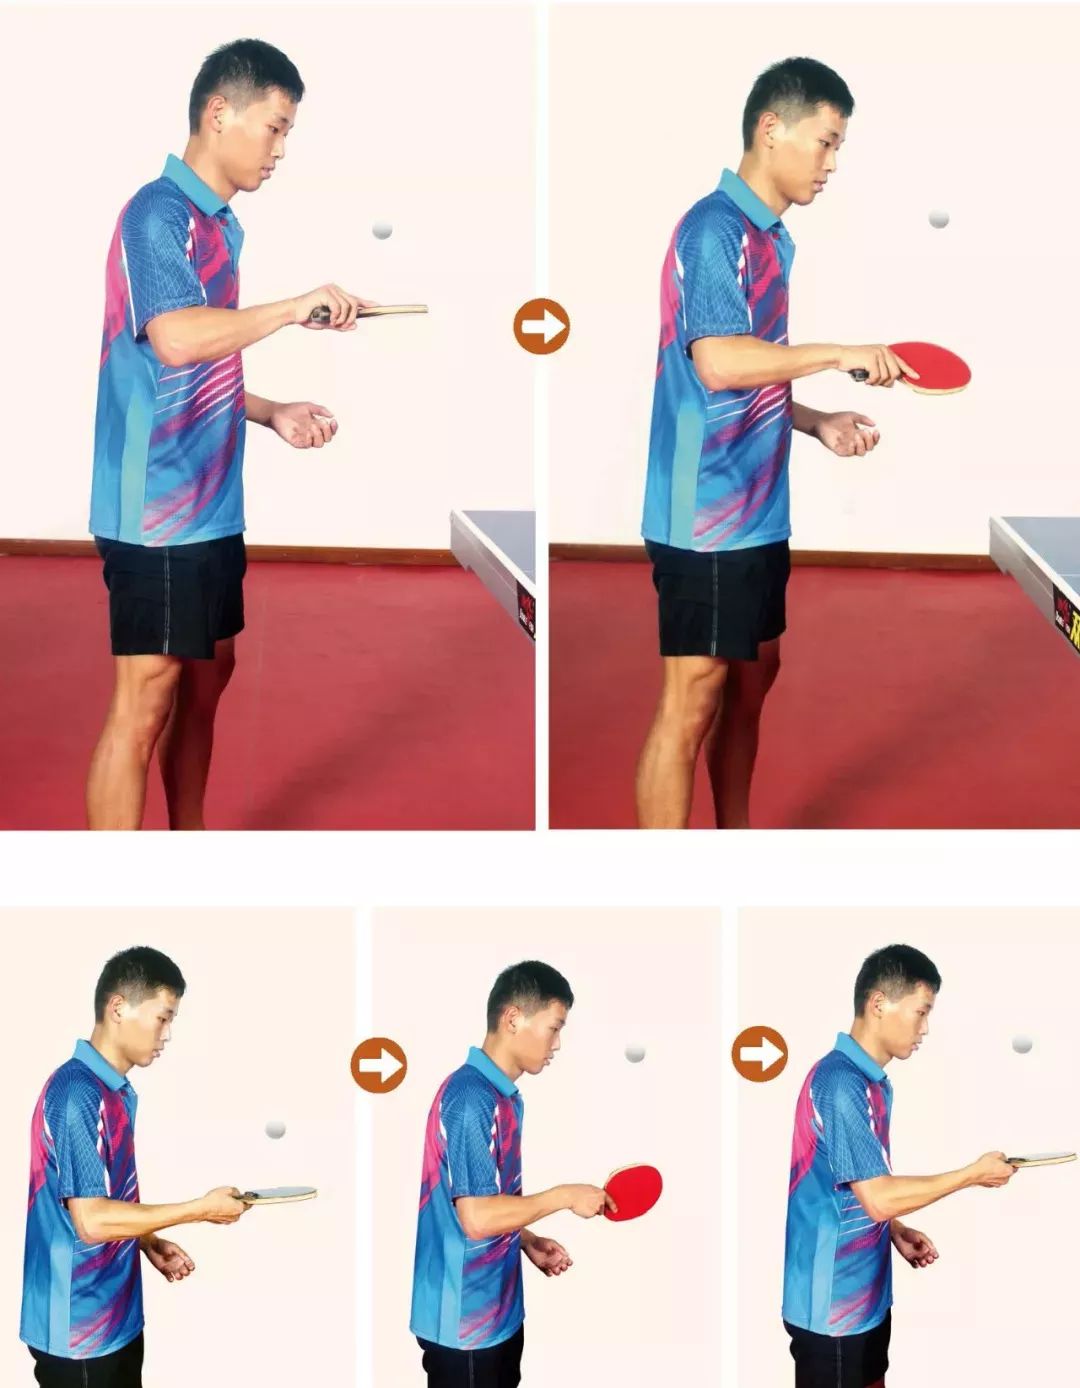 2019年安徽省大中学生乒乓球比赛在淮南师范学院隆重举行